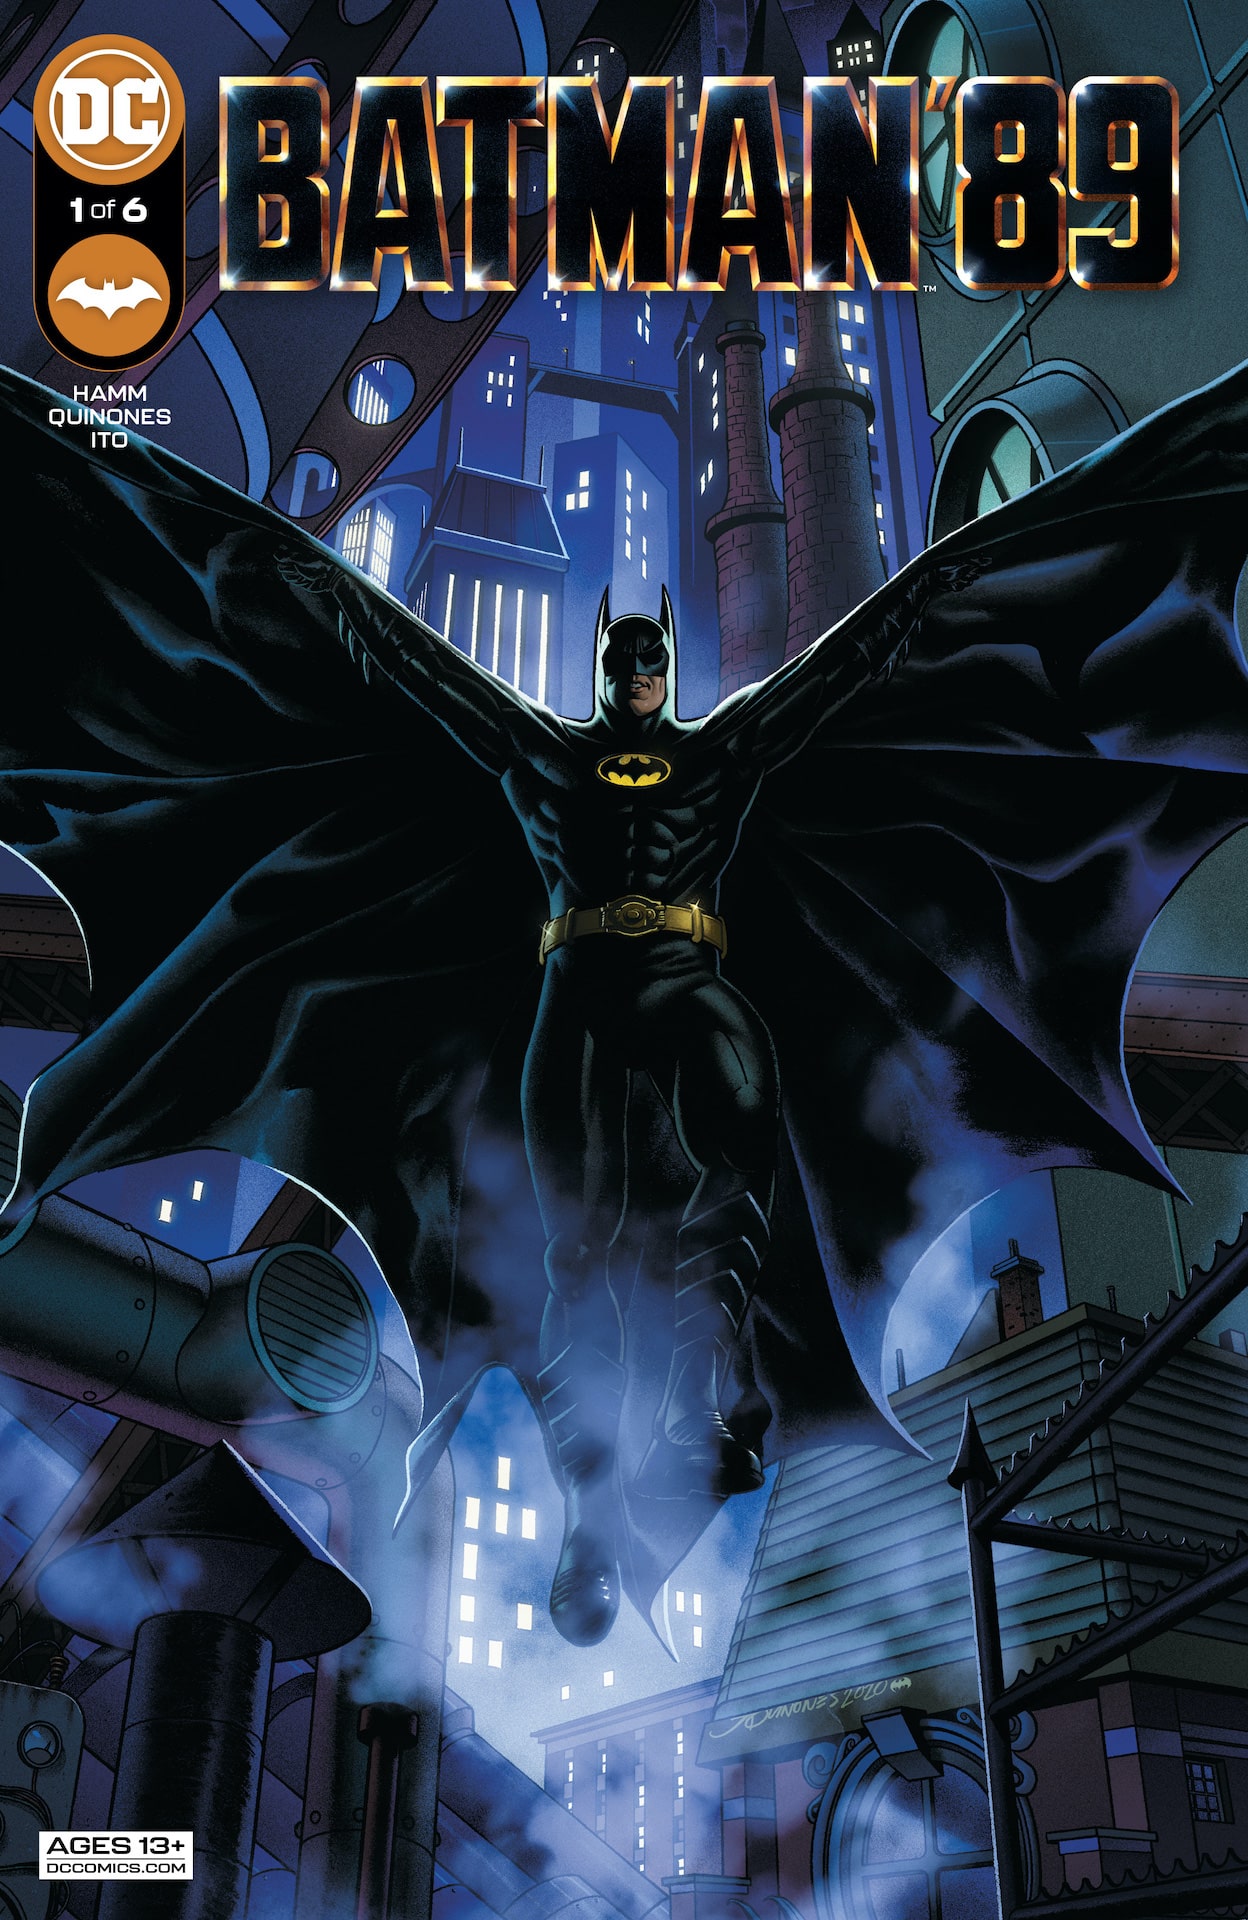 DC Preview: Batman '89 #1